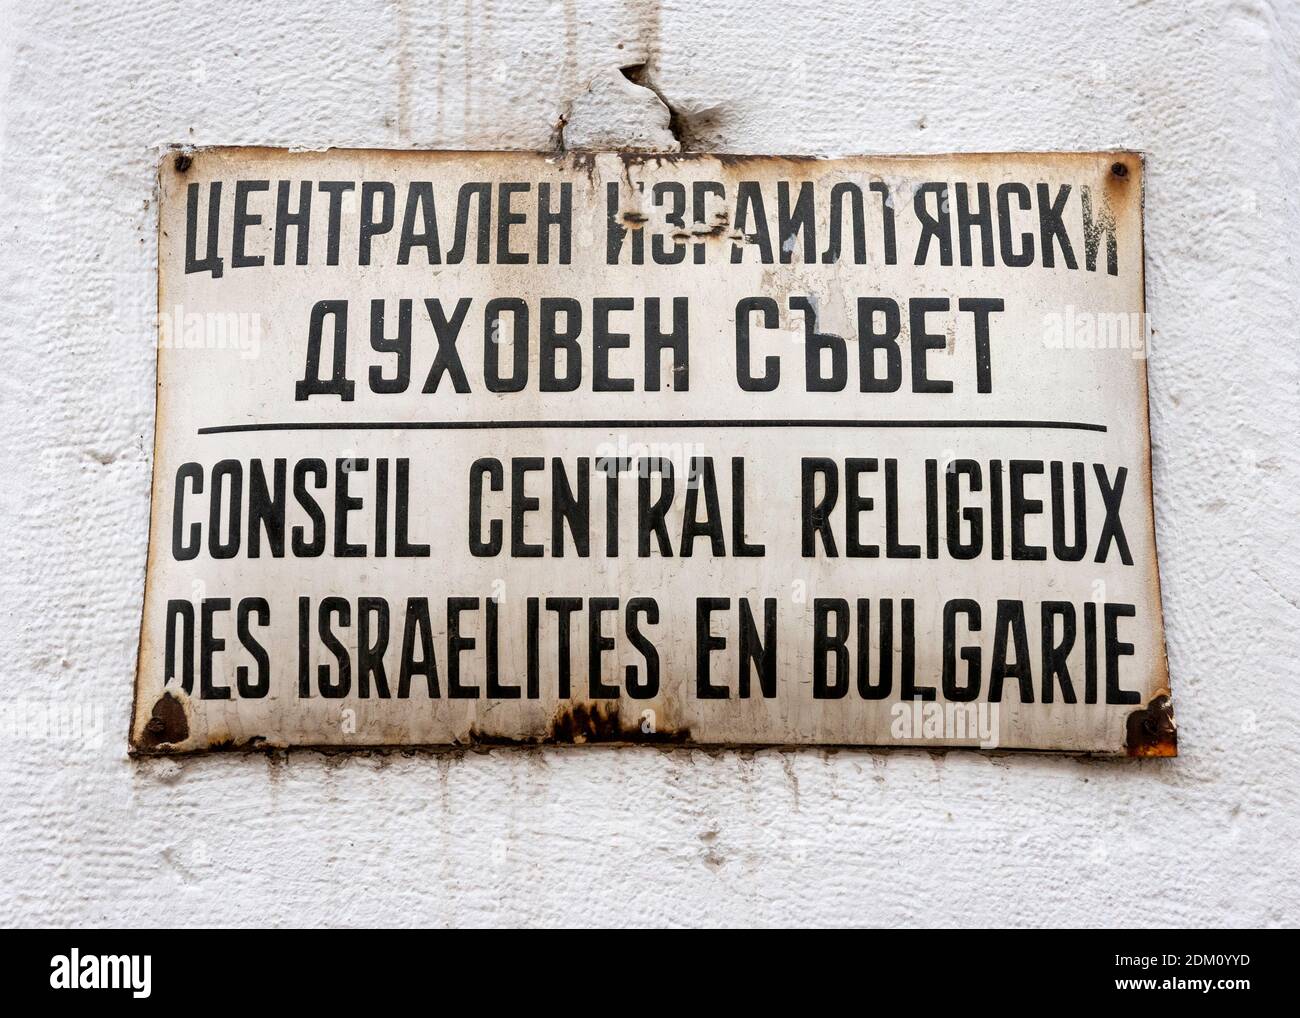 Ancien signe dépassé pour le Conseil religieux juif central de Bulgarie en langue française à la Synagogue ou Shul in Sofia Bulgarie Europe de l'est Banque D'Images